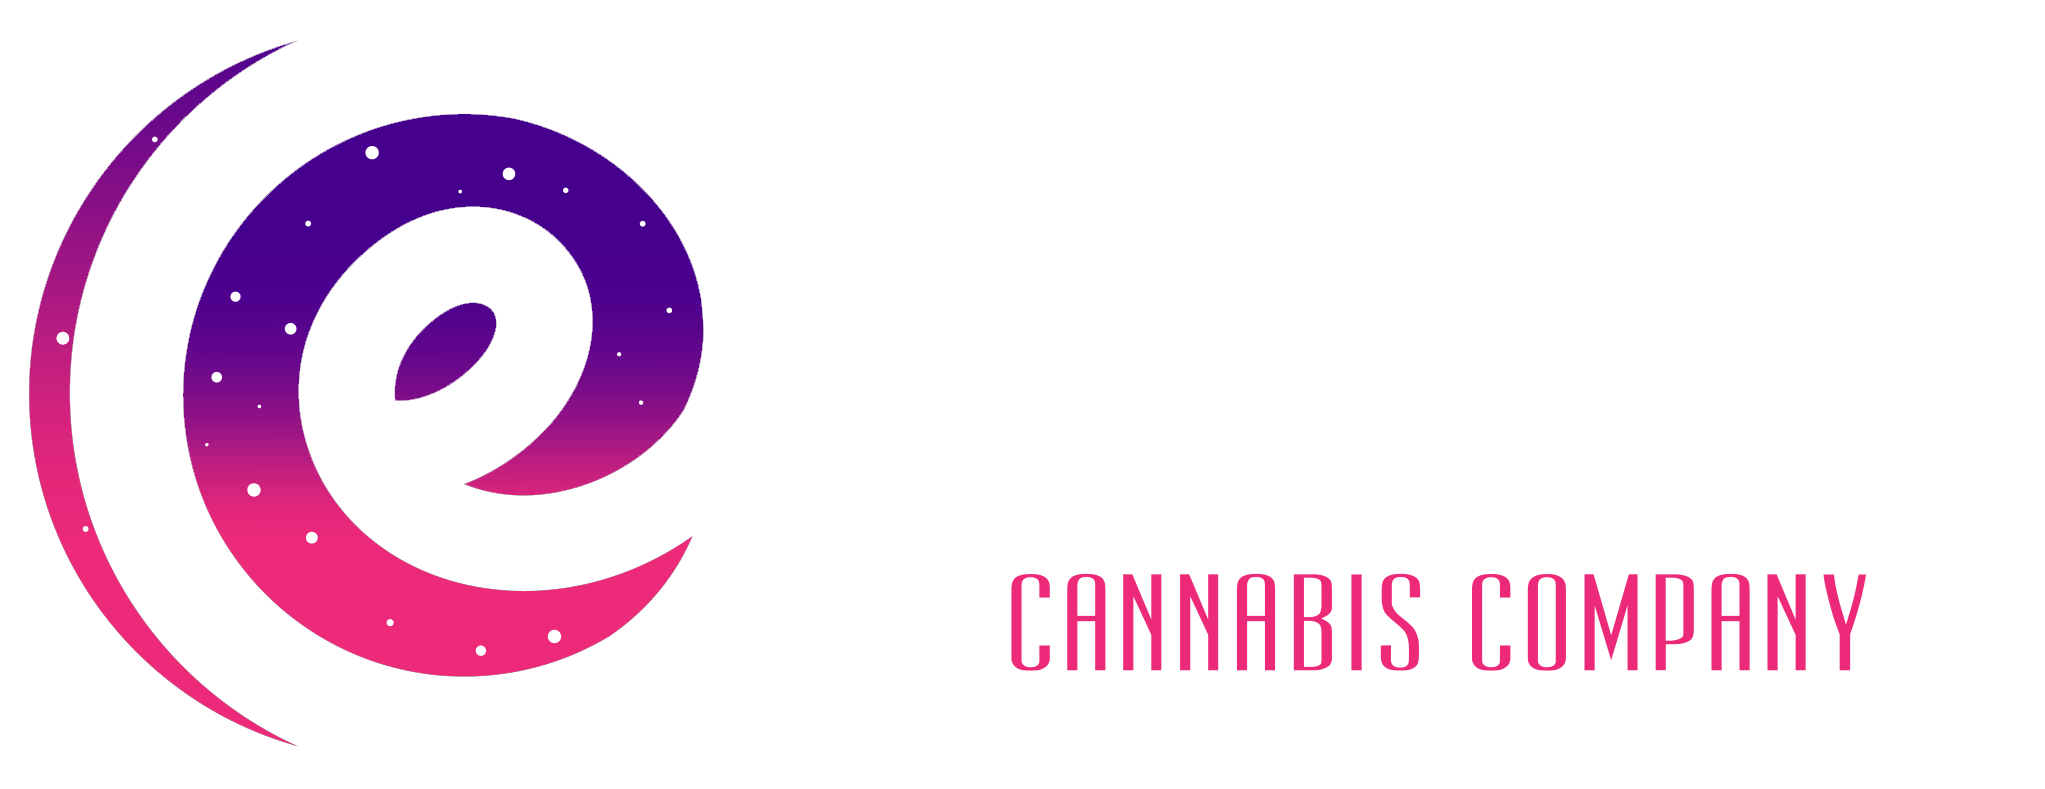 eclipse cannabis co.